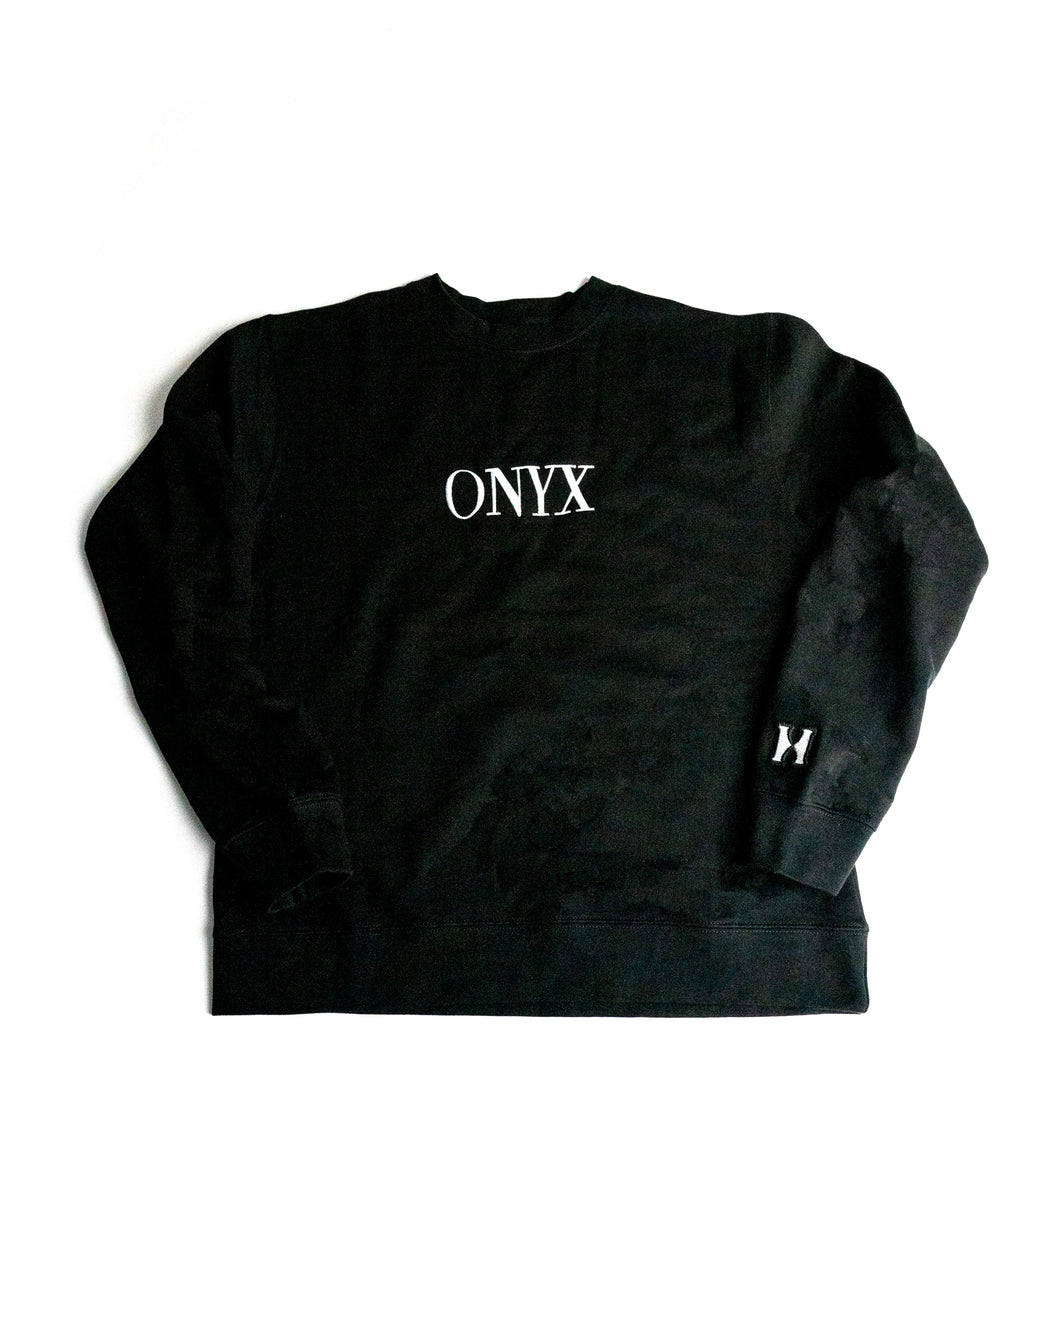 ONYX Crewneck